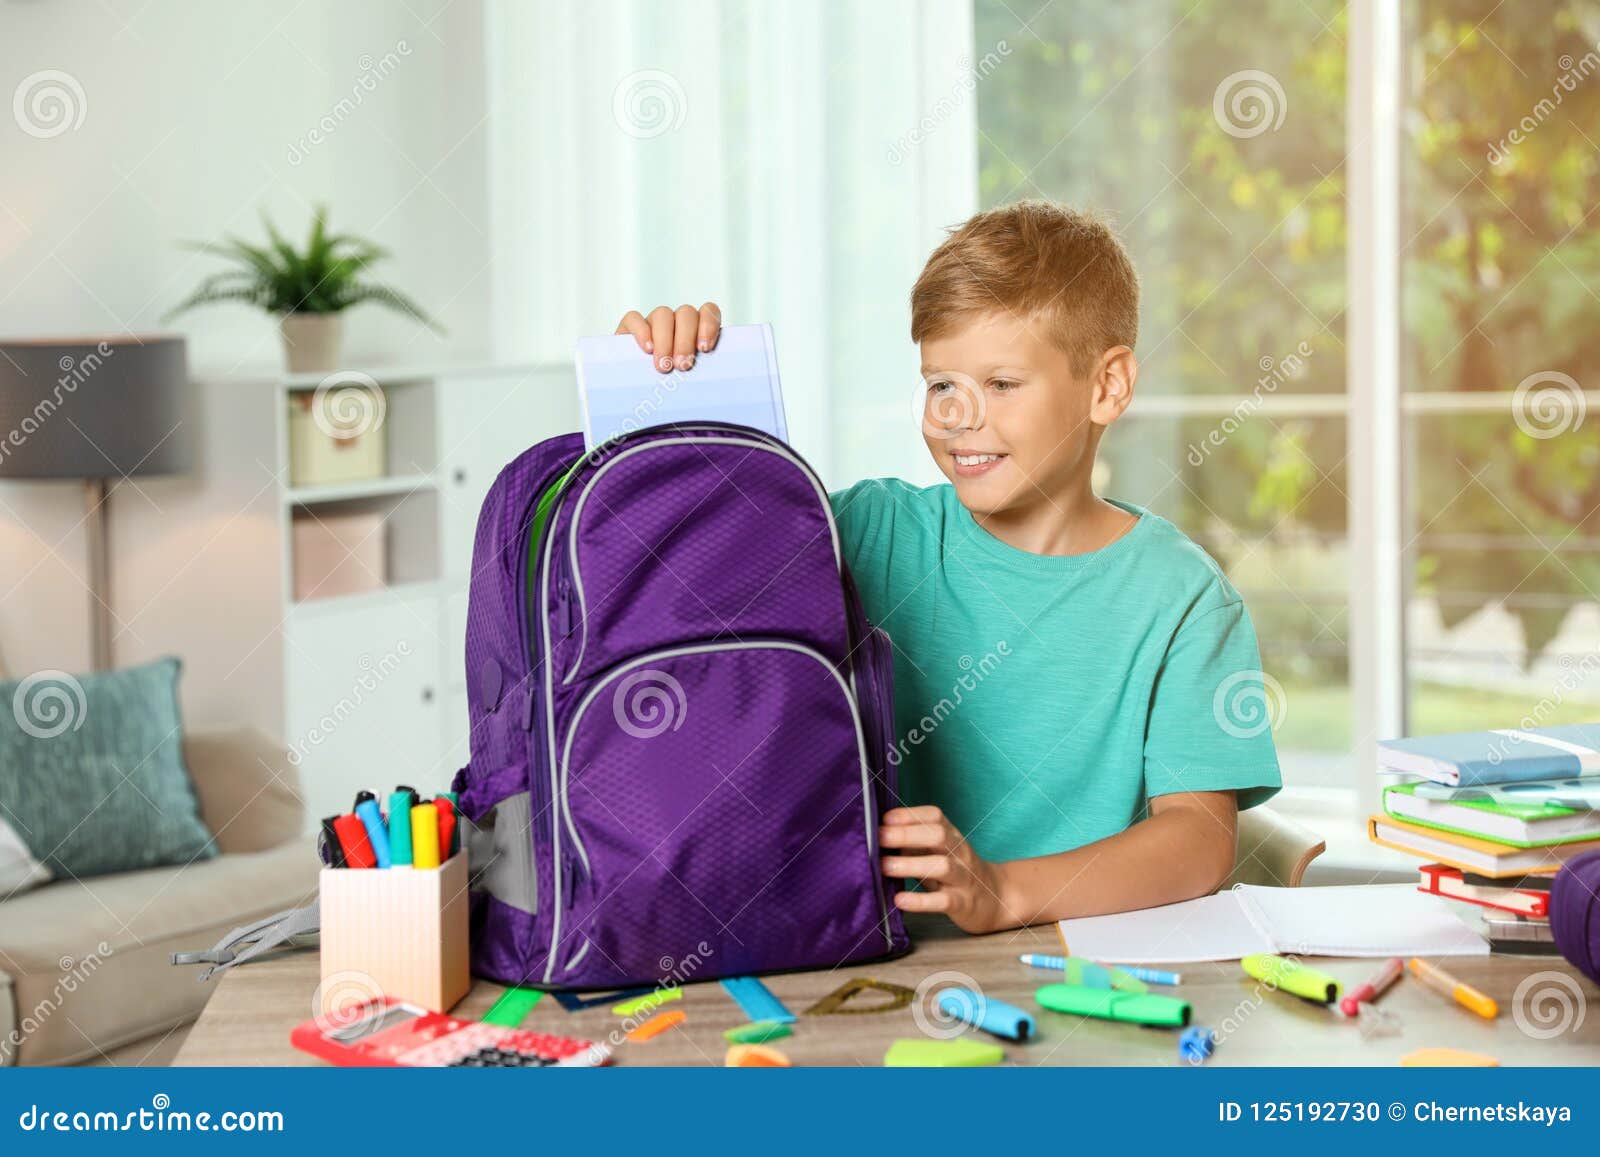 Проверить портфель. Мальчик собирается в школу. Ребенок собирает портфель в школу. Мальчик собирает портфель в школу. Ребенок собирает рюкзак.